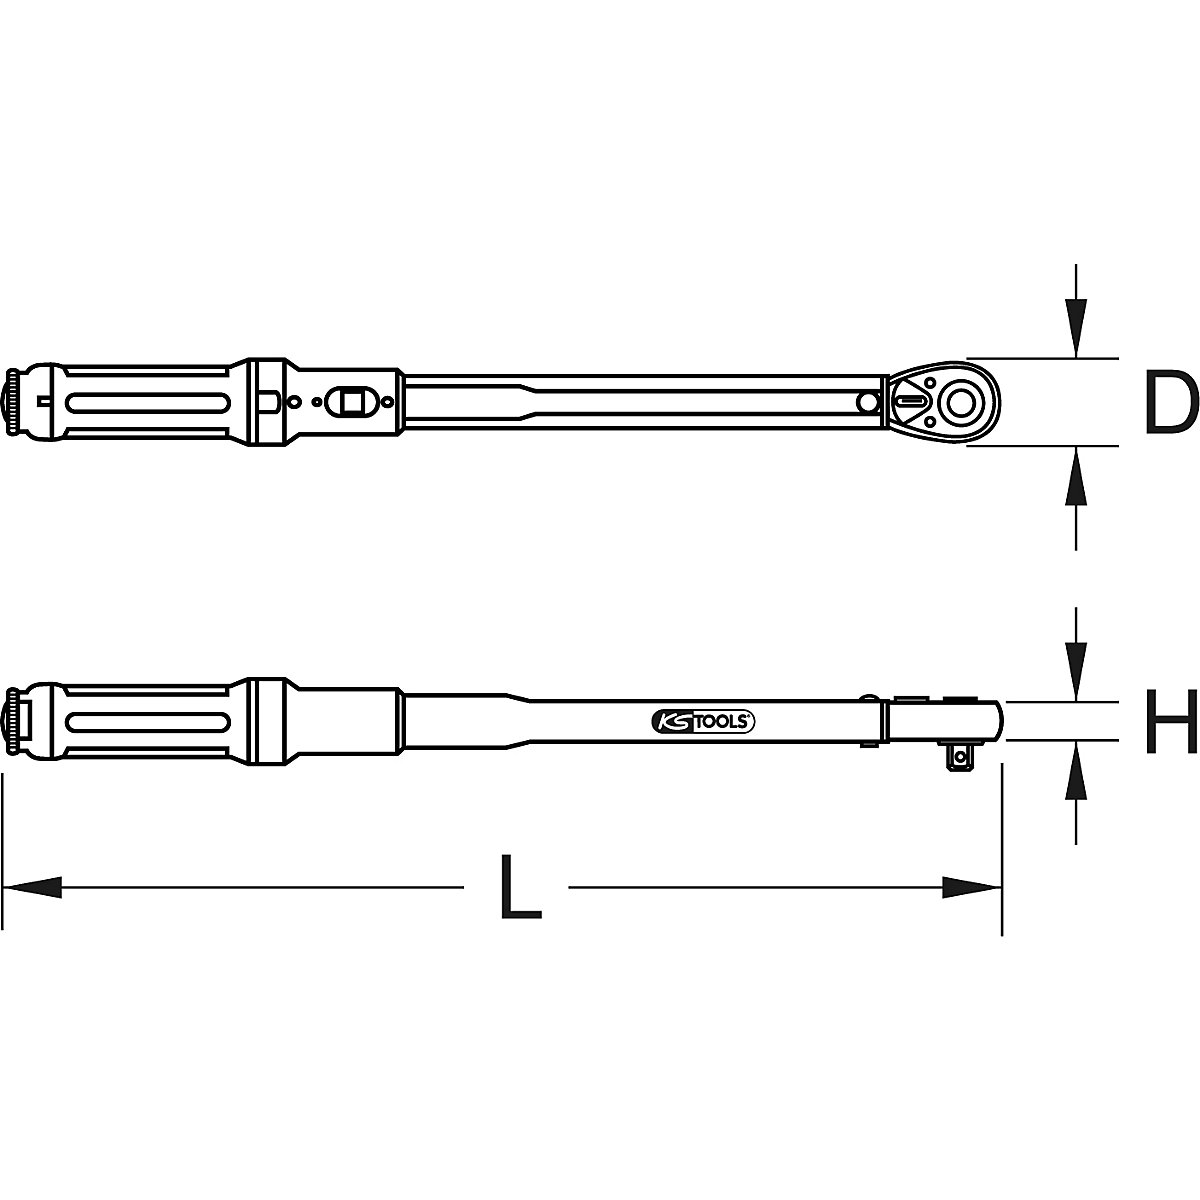 Chiave dinamometrica ERGOTORQUE®precision con testa a cricco reversibile – KS Tools (Foto prodotto 7)-6